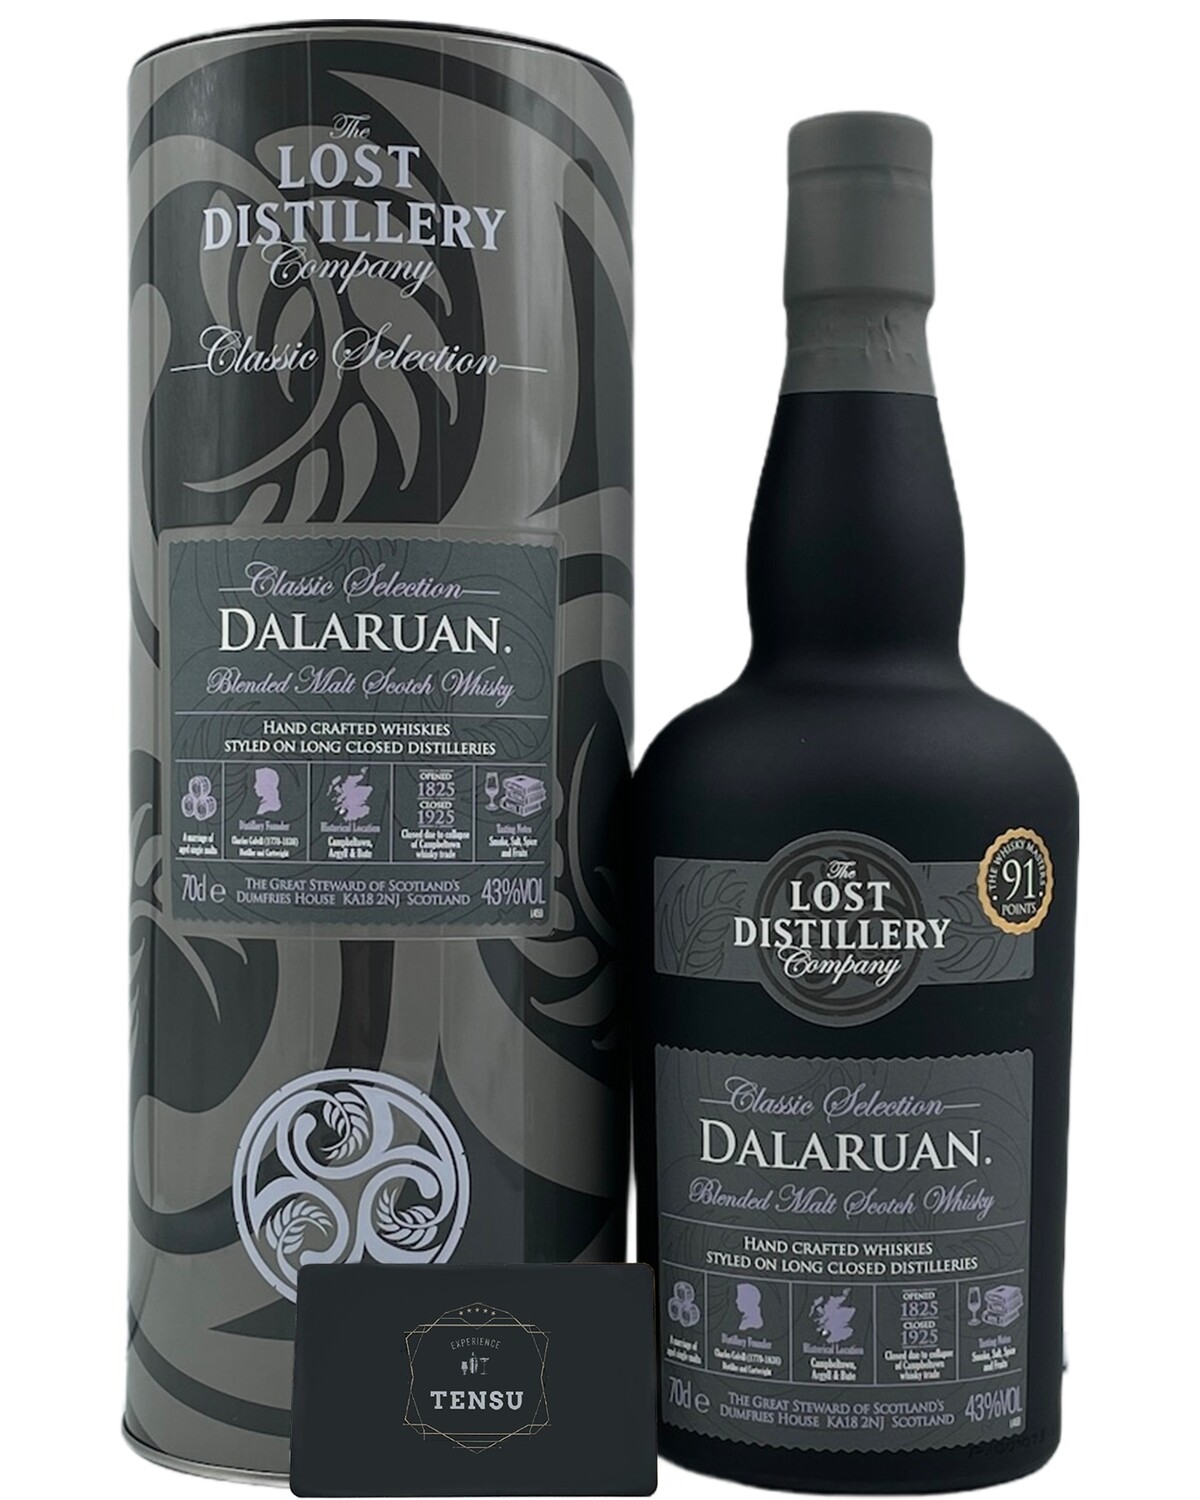 Dalaruan - Classic Selection 43.0 "The Lost Distillery Company"